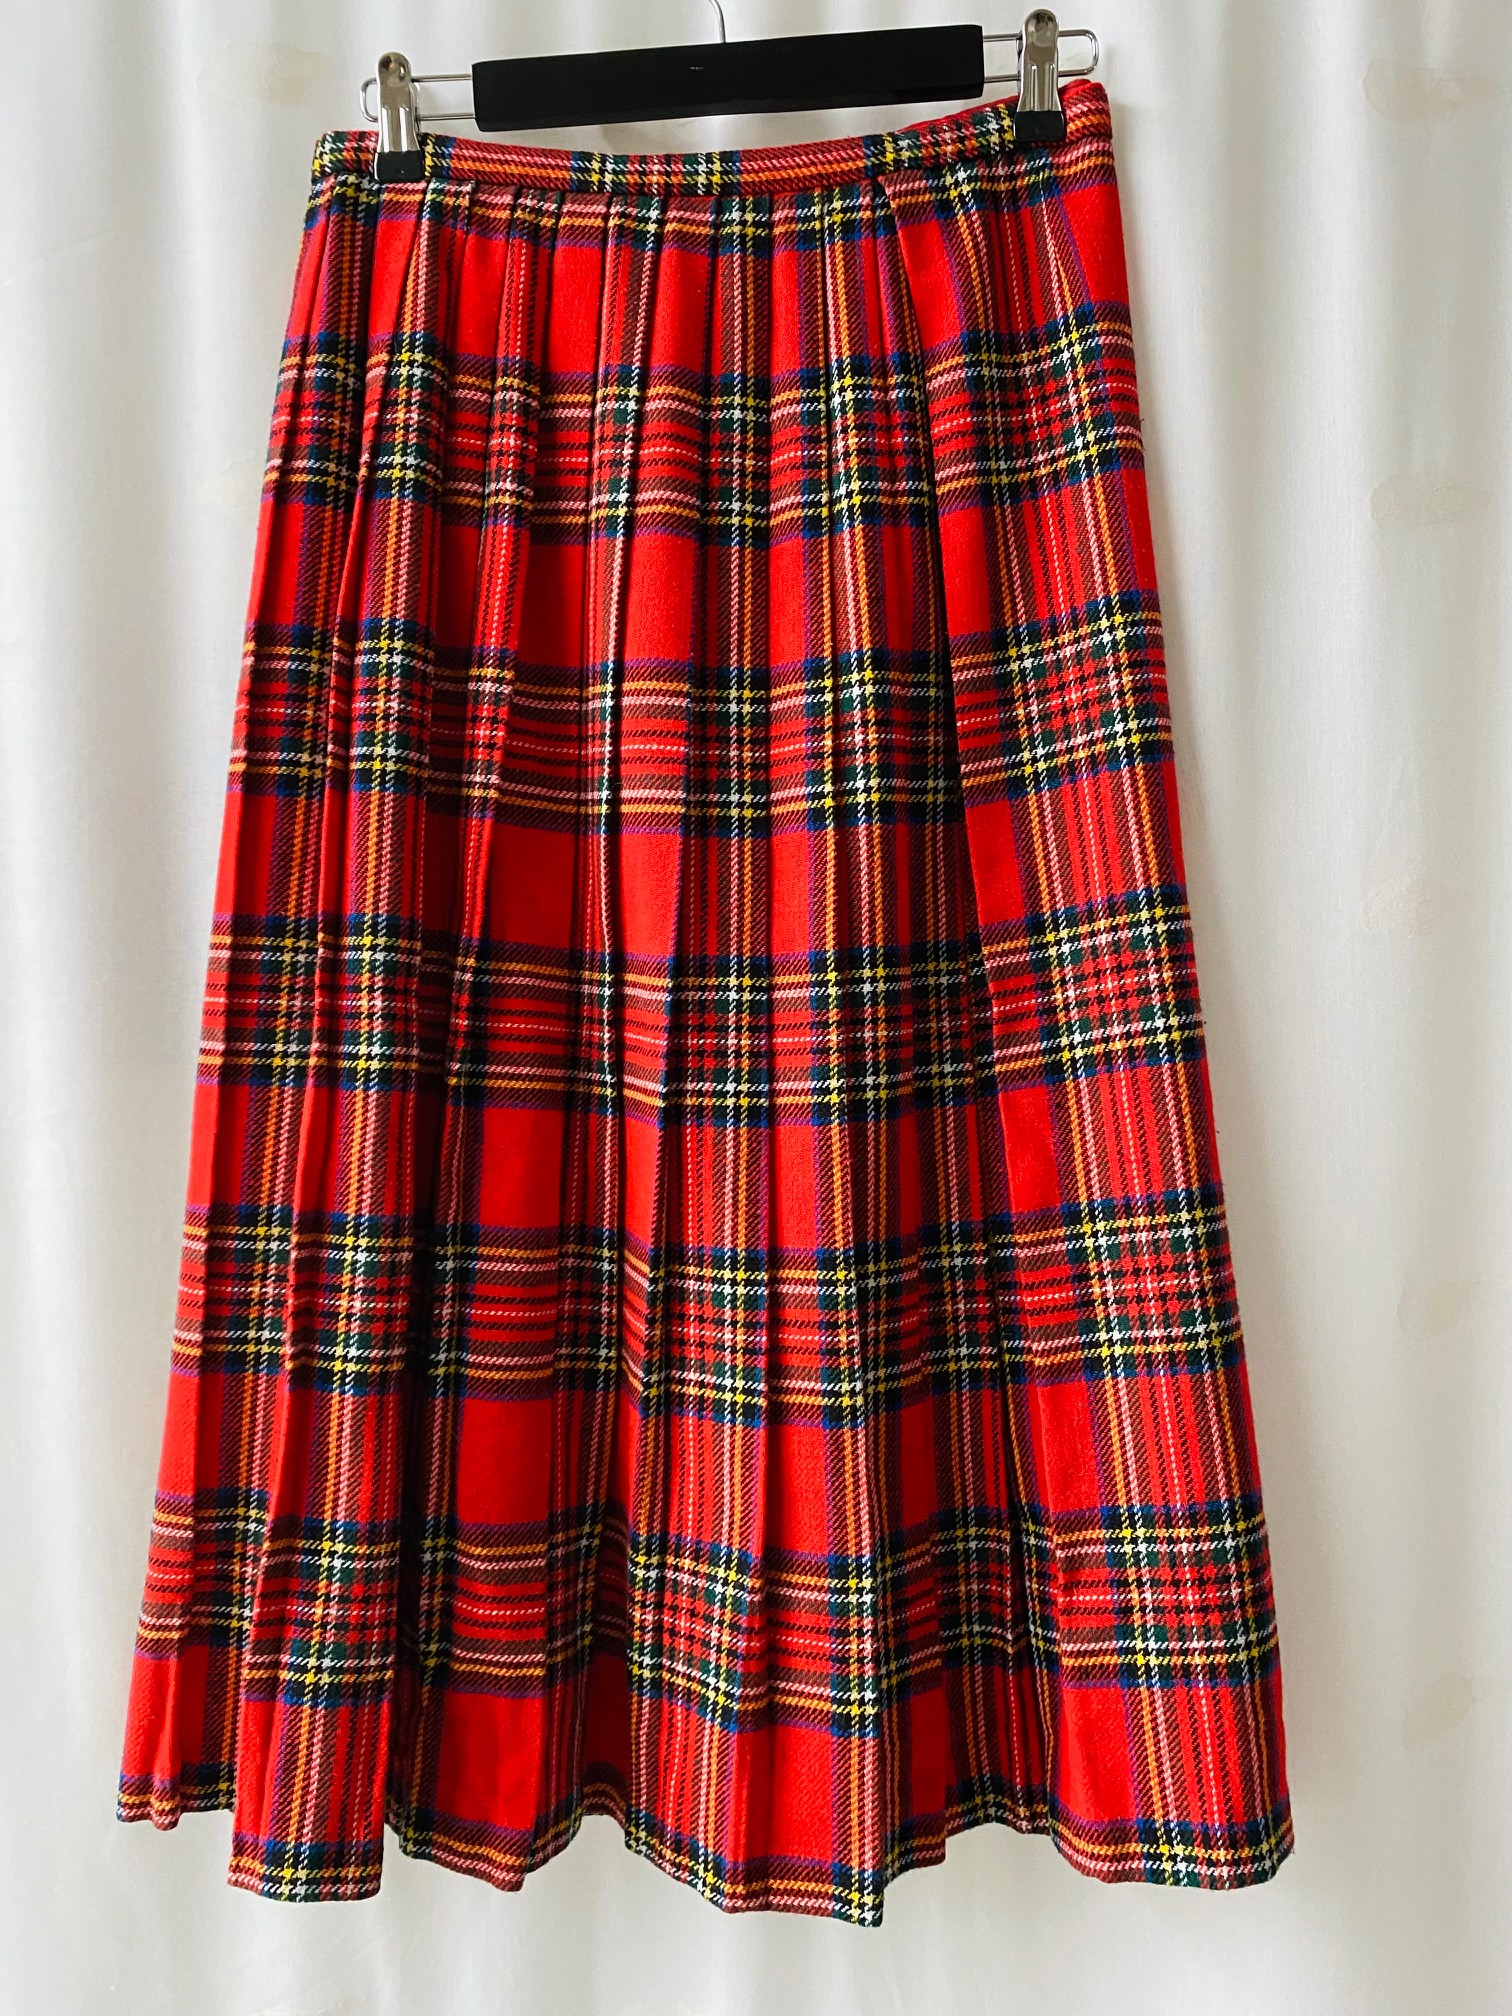 Skotskrutig kjol